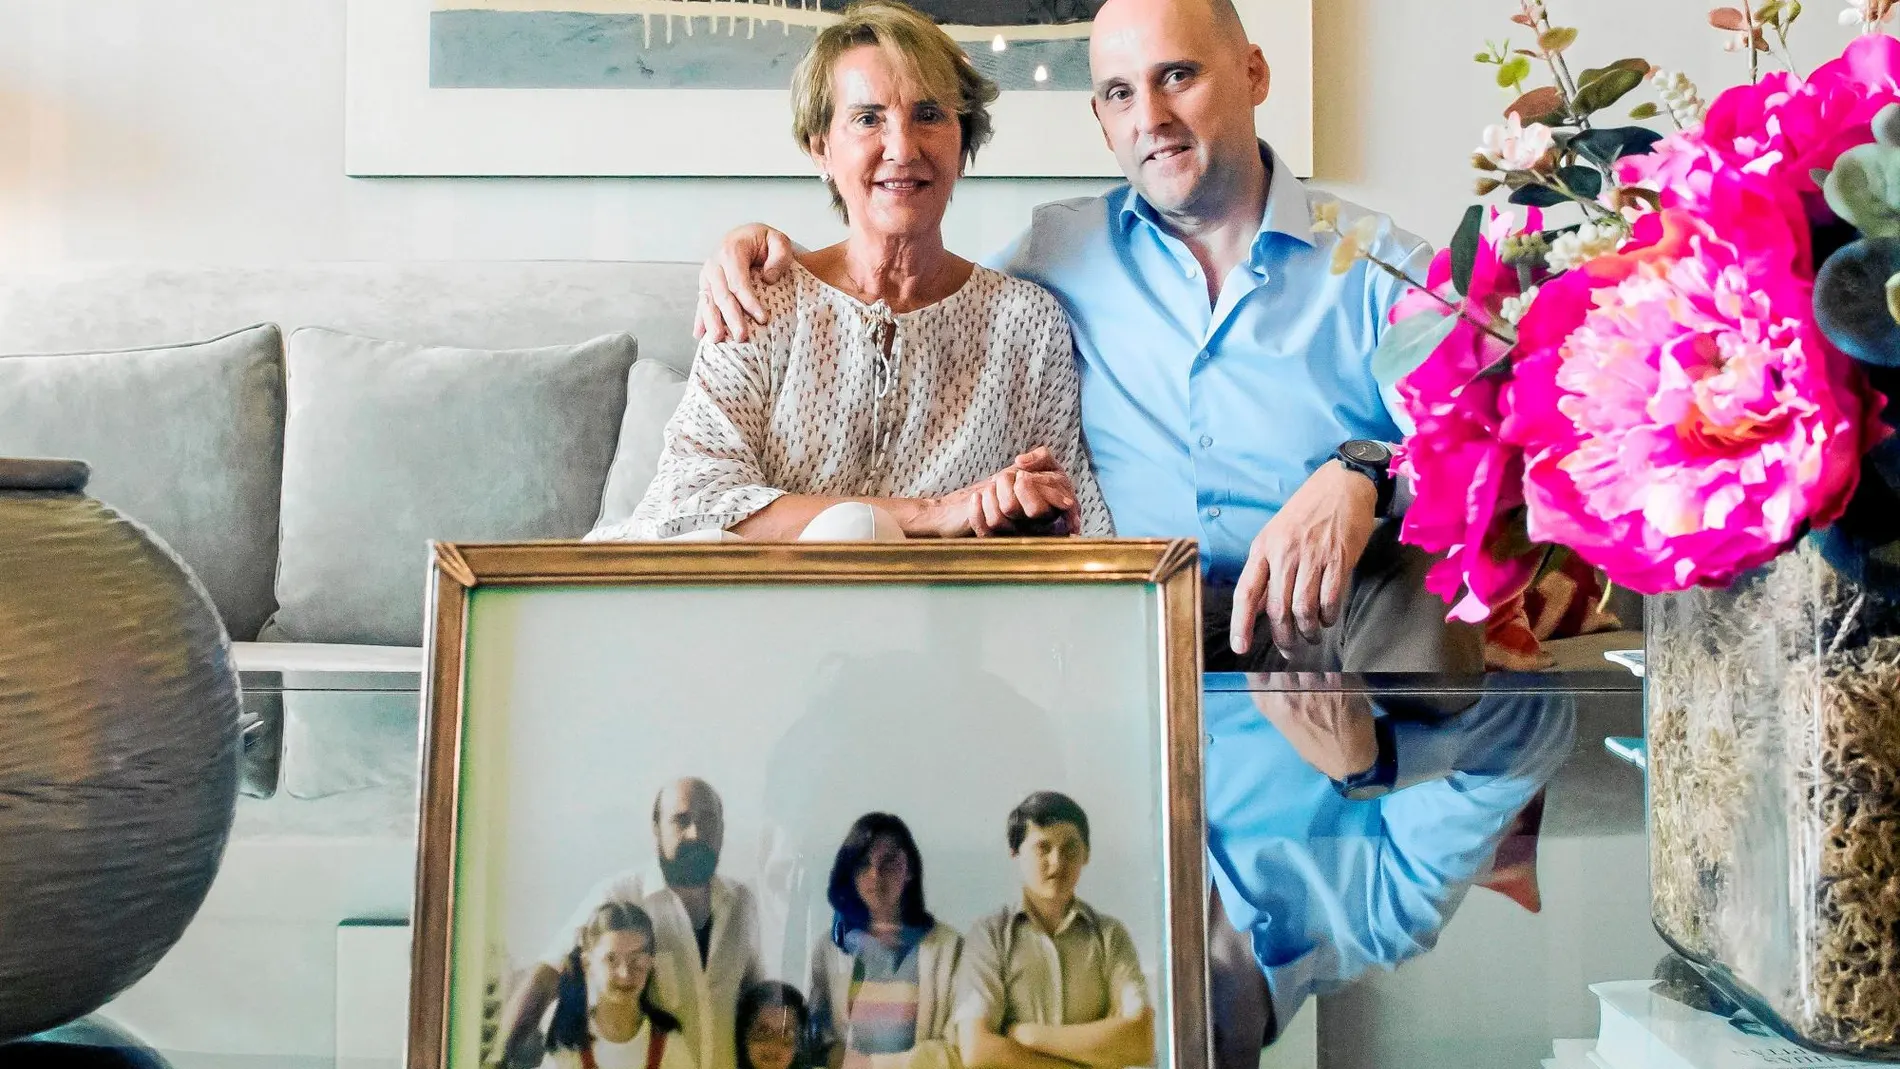 Charo Muela posa junto a uno de sus hijos ante una fotografía de toda la familia antes de que ETA asesinara a su marido / Efe